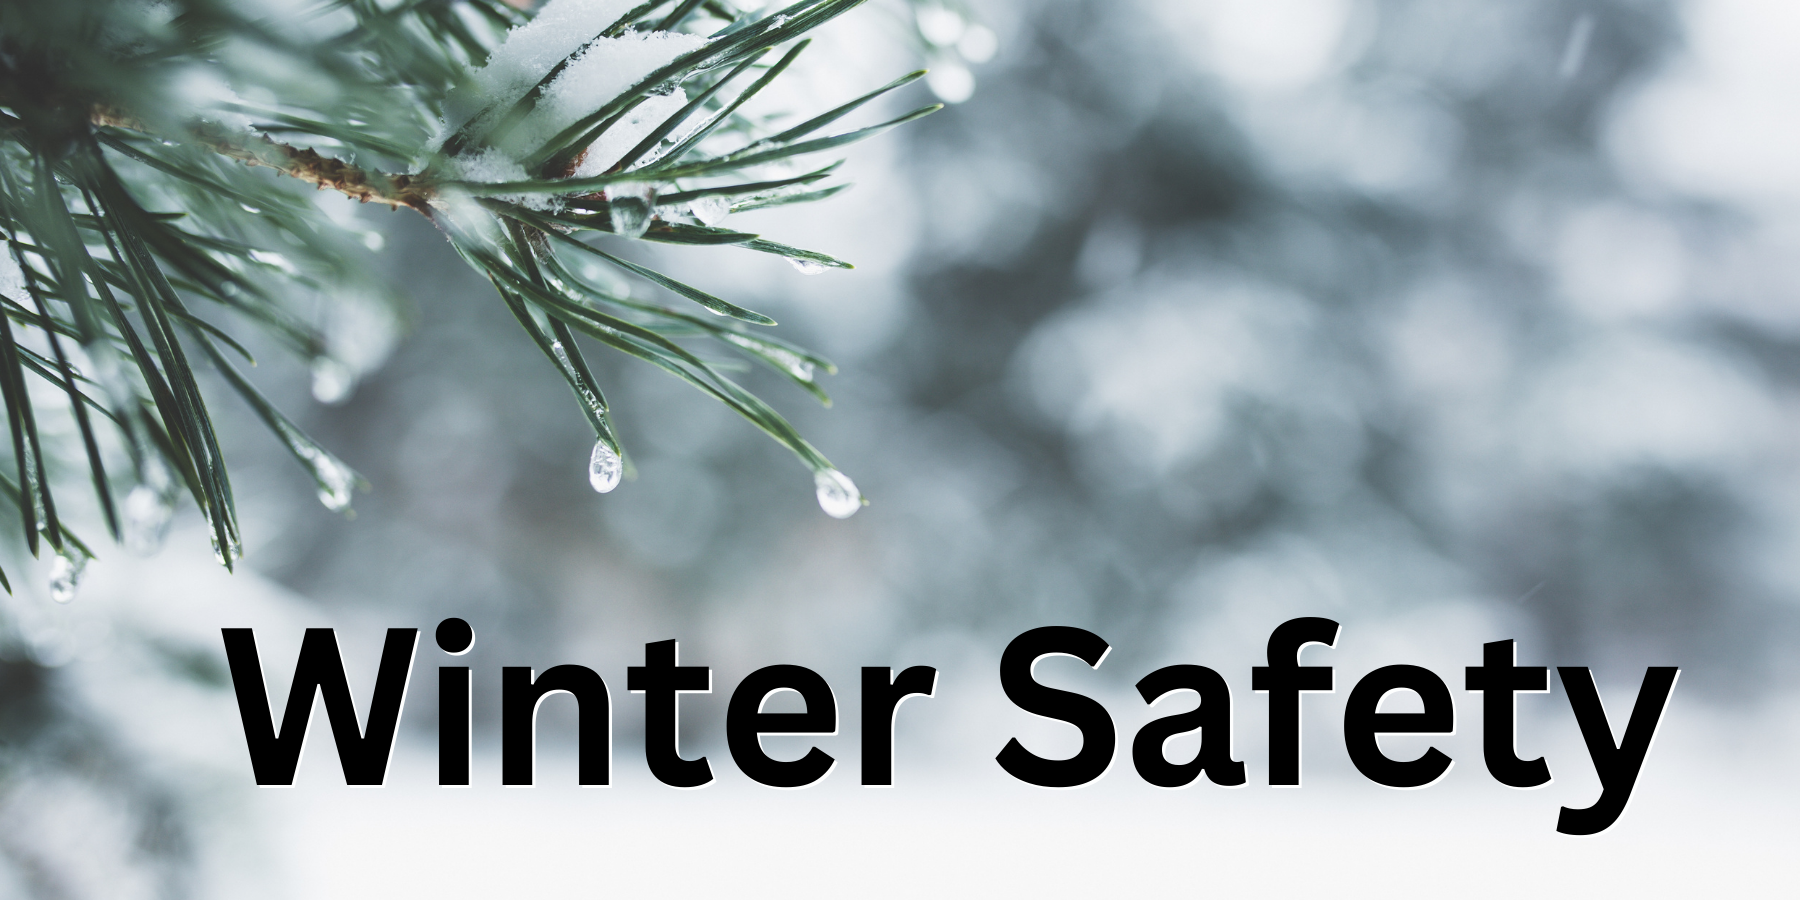 Winter Safety information banner